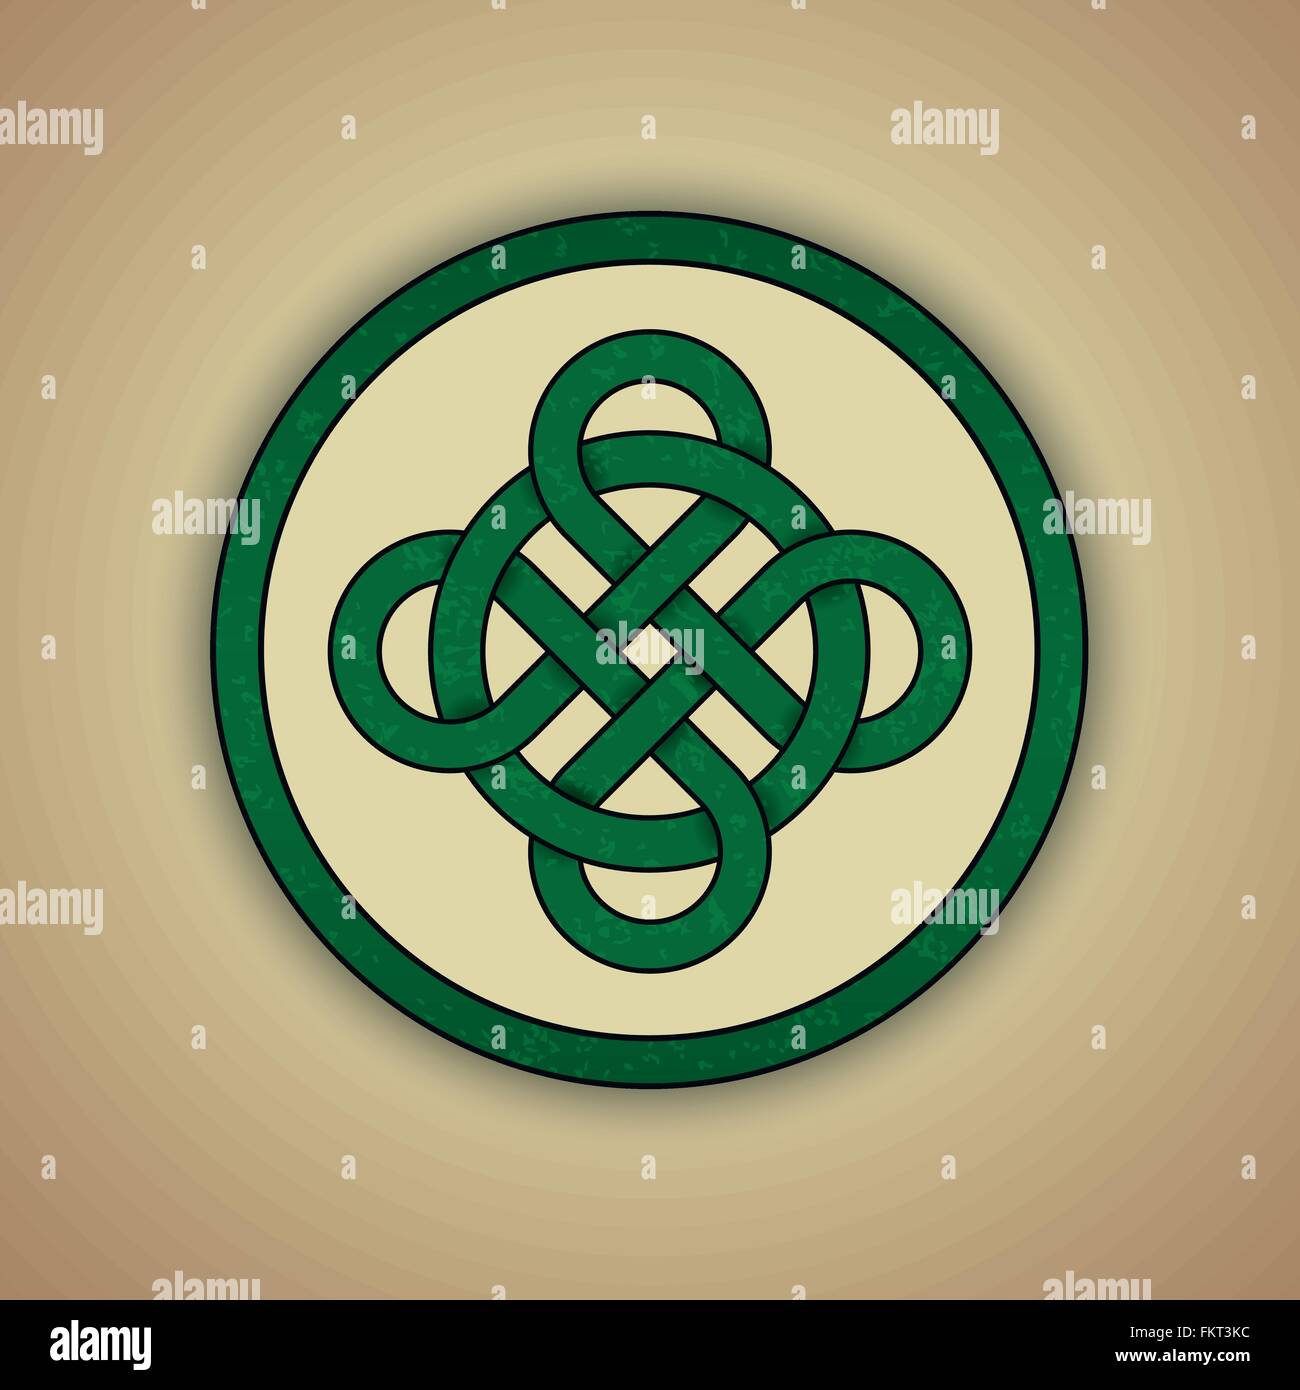 Noeud celtique verte d'luckwith légère texture grunge Illustration de Vecteur